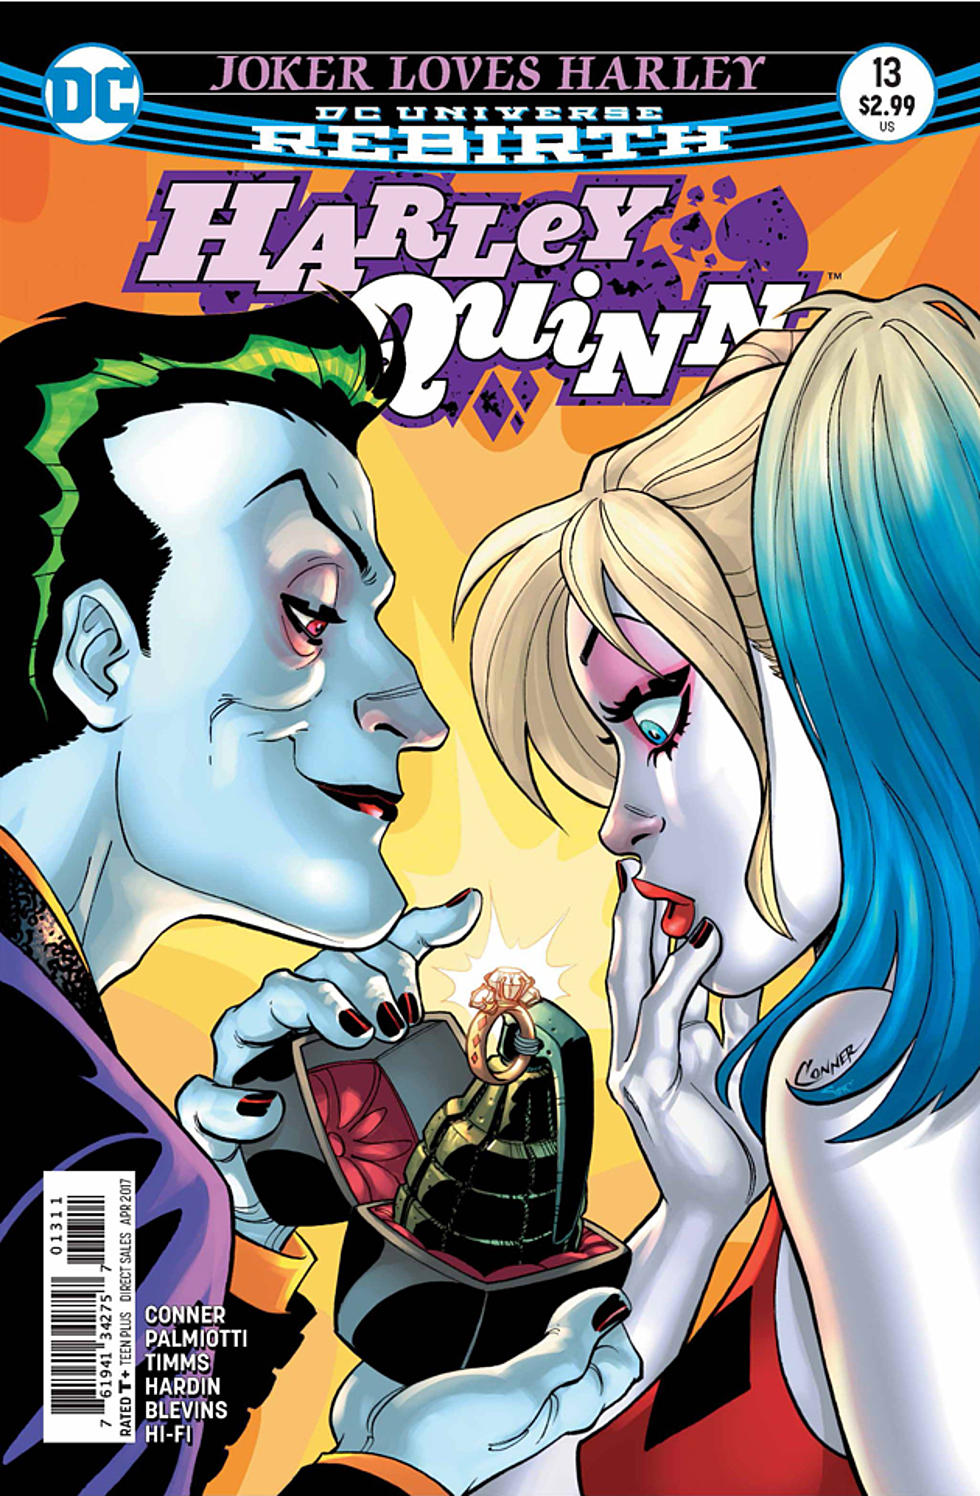 Joker Loves Harley' Ends Explosively In 'Harley Quinn' #13